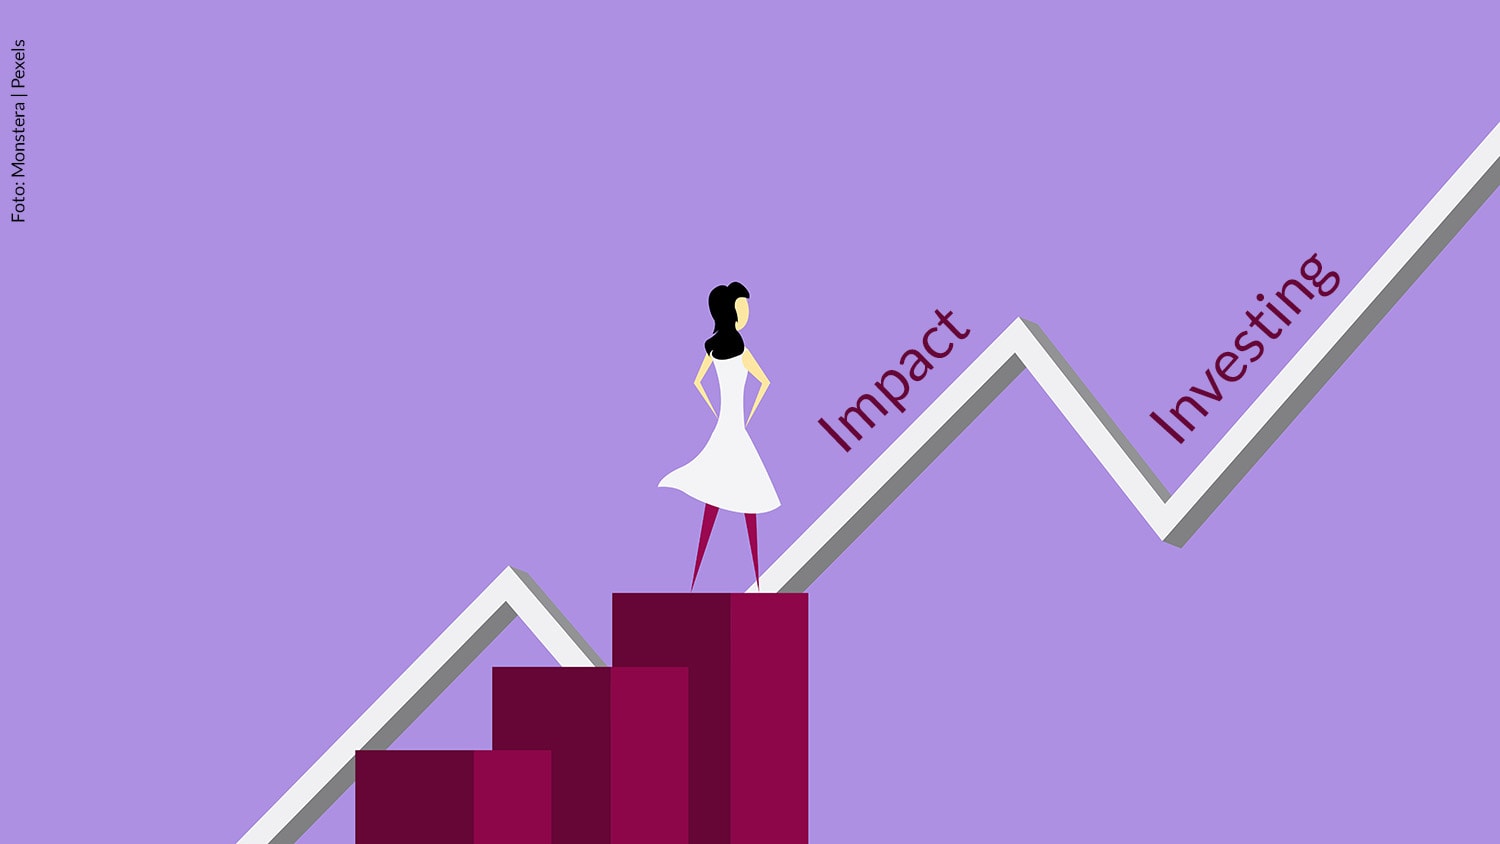 Eine Grafik: Eine Frauenfigur steht auf drei Stufen, die an ein Balkendiagramm erinnern. Im Hintergrund verläuft ein tendenziell steigender Graph. Entlang des Graphs steht der Begriff "Impact Investing"